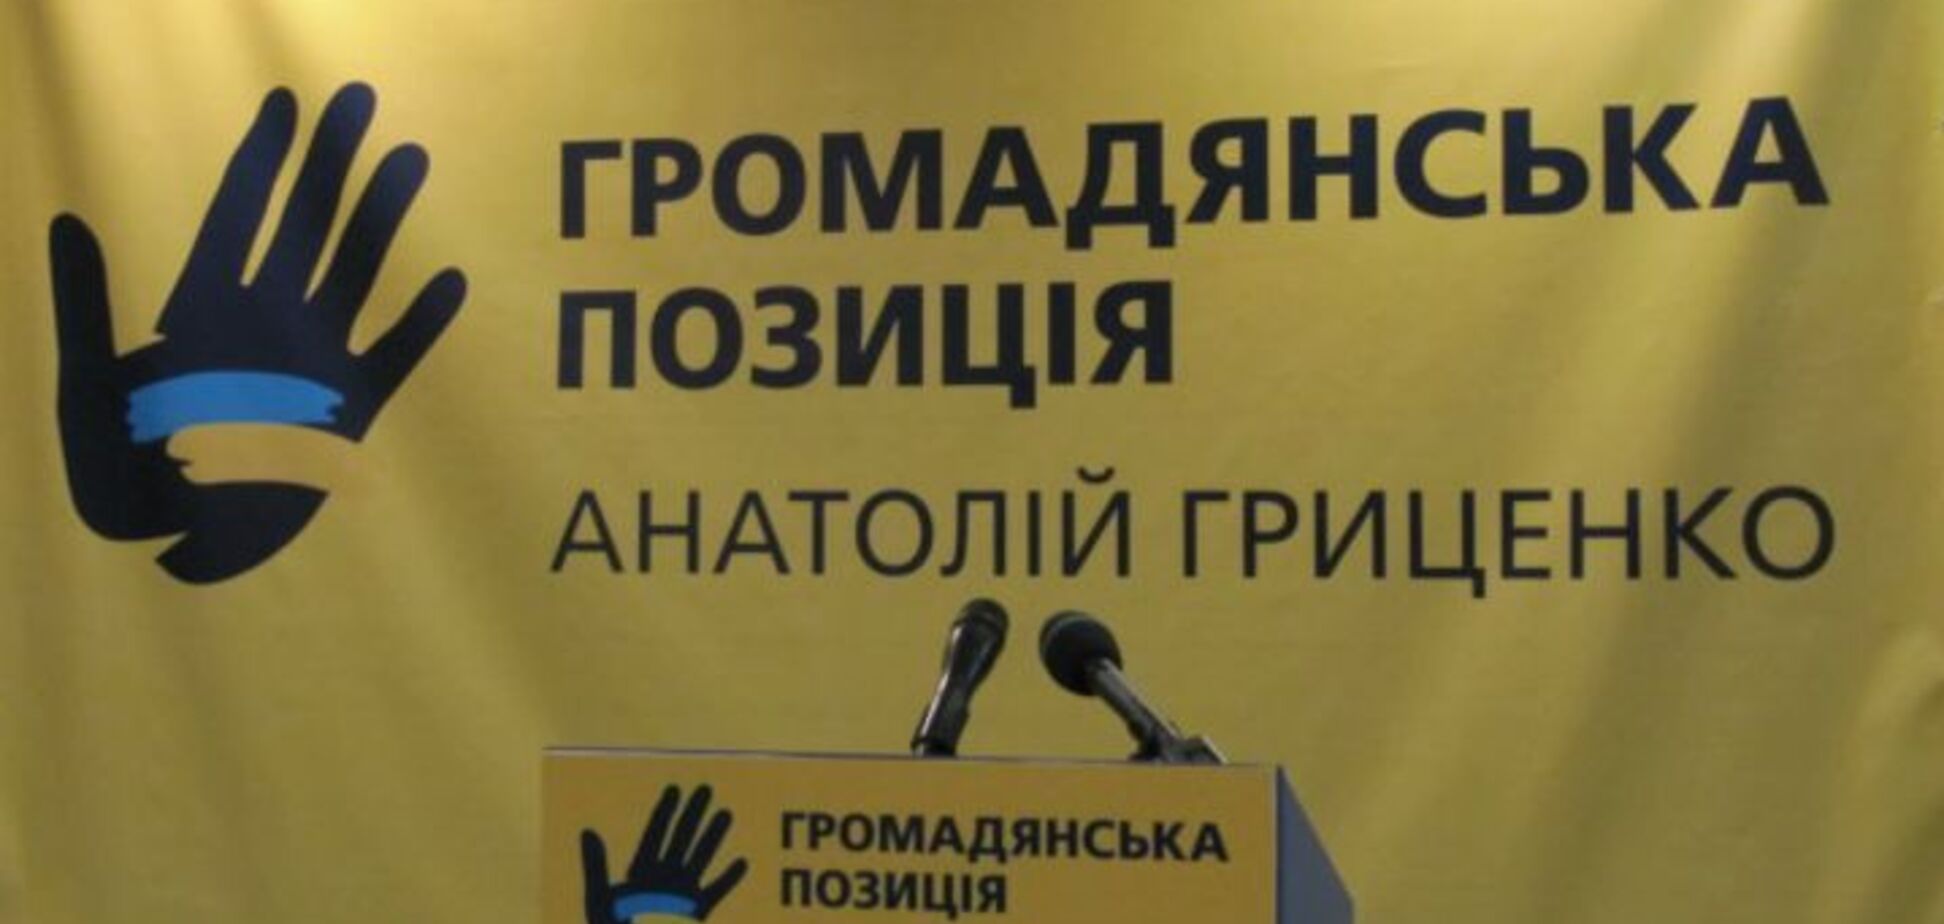 'Громадянська позиція' — перша партія, яку зареєструвала ЦВК на вибори у ВР